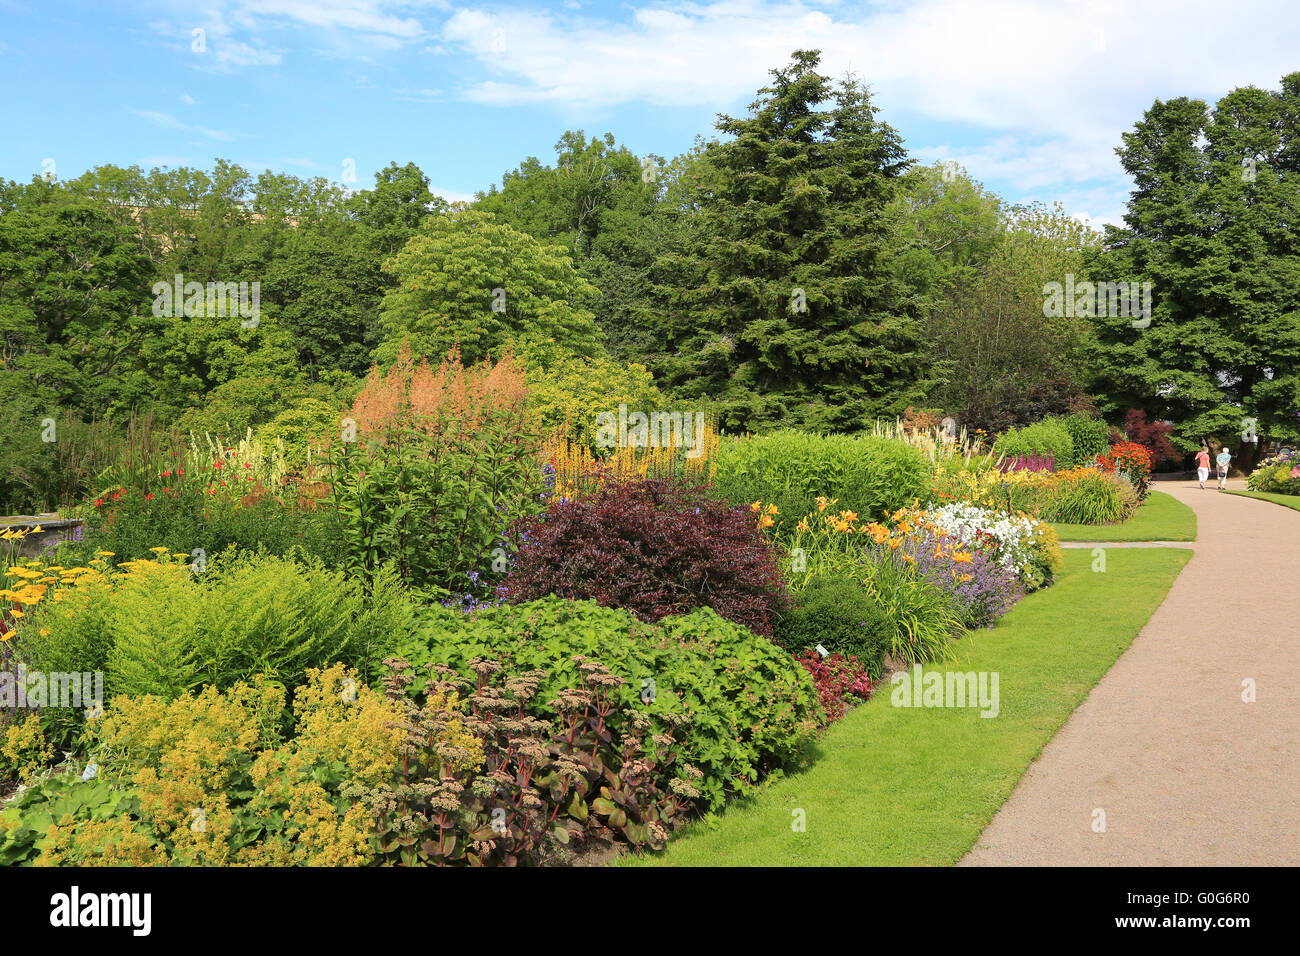 Botanical garden in Gothenburg, Sweden Stock Photo